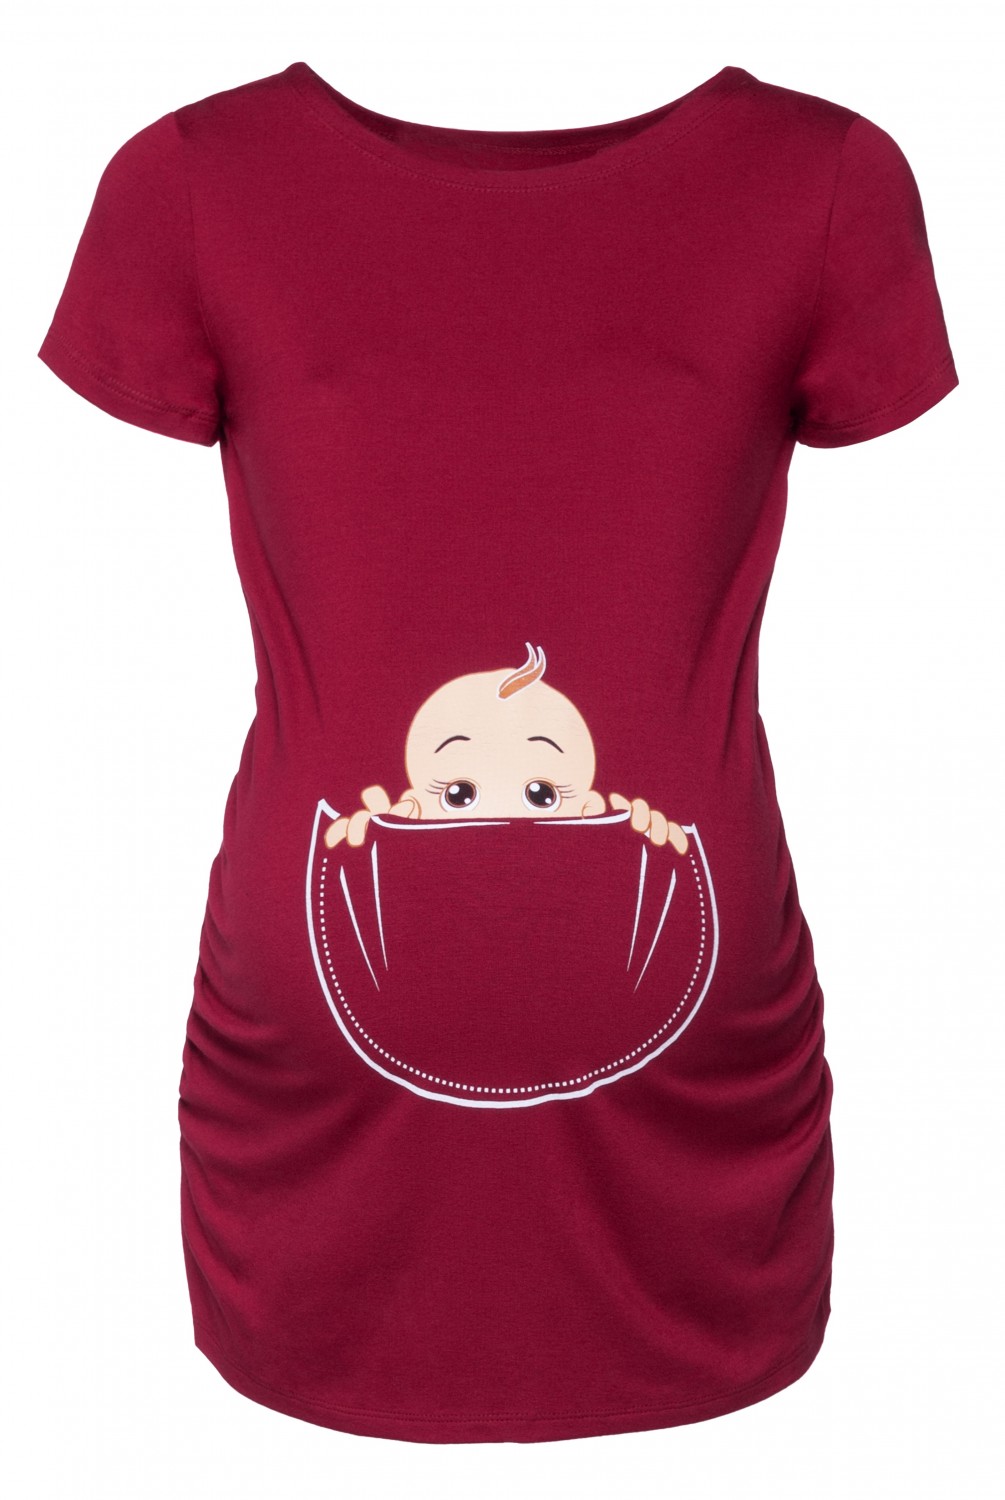 501p Damen Baby in der Tasche T-Shirt Top Oberteil für Schwangere Happy Mama